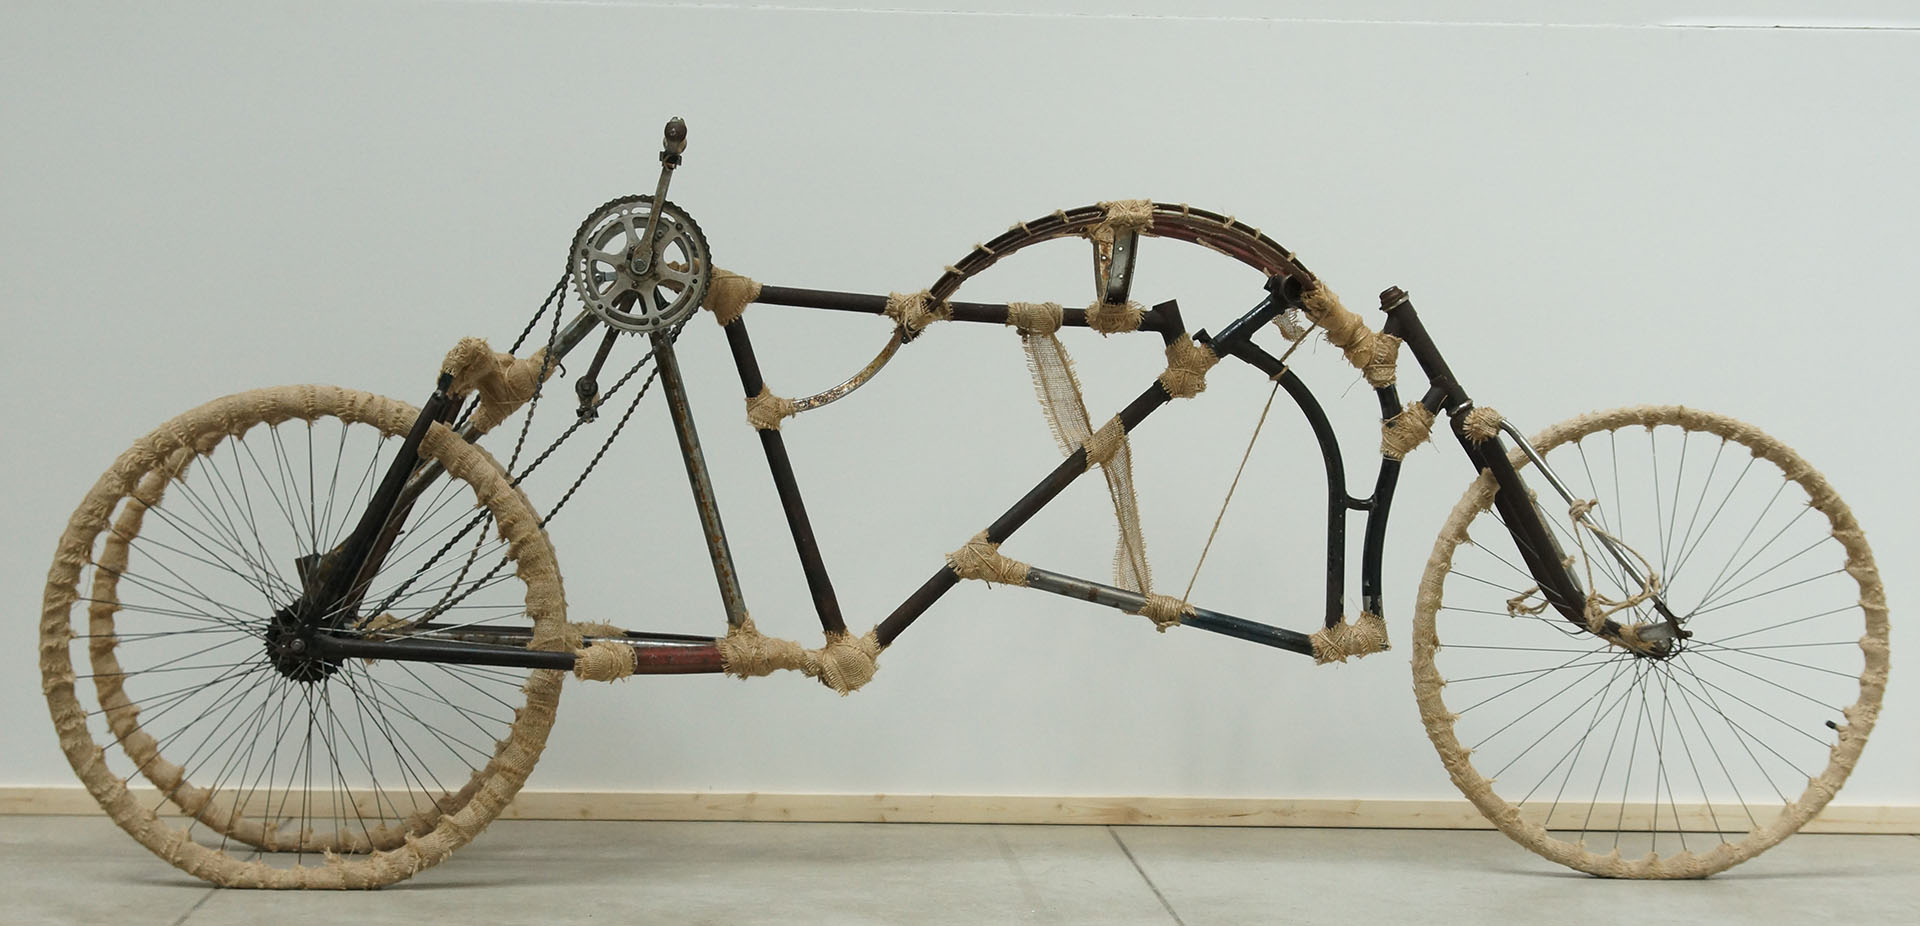 Zdjęcie przedstawia konstrukcję roweru stworzoną z pięciu ram rowerowych. Obiekt nawiązuje do nietypowych i kontrowersyjnych konstrukcji z filmu Mad Max. Użytkownik korzystający z roweru jest w założeniu projektu w pozycji leżącej. Obiekt napędzany jest siłą ludzkich rąk, korby zębate umieszczone po obu stronach suportu przenoszą napęd na tylne koła znajdujące się z przodu. Skrętne jest przednie koło znajdujące się w tylnej części pojazdu, użytkownik wykonuje skręty nogami. Łączenia ram zakrywają detale w postaci sznurków i taśmy jutowej. Koła nie posiadają już opon, zostały zastąpione taśmą jutową dla wzbogacenia detalu